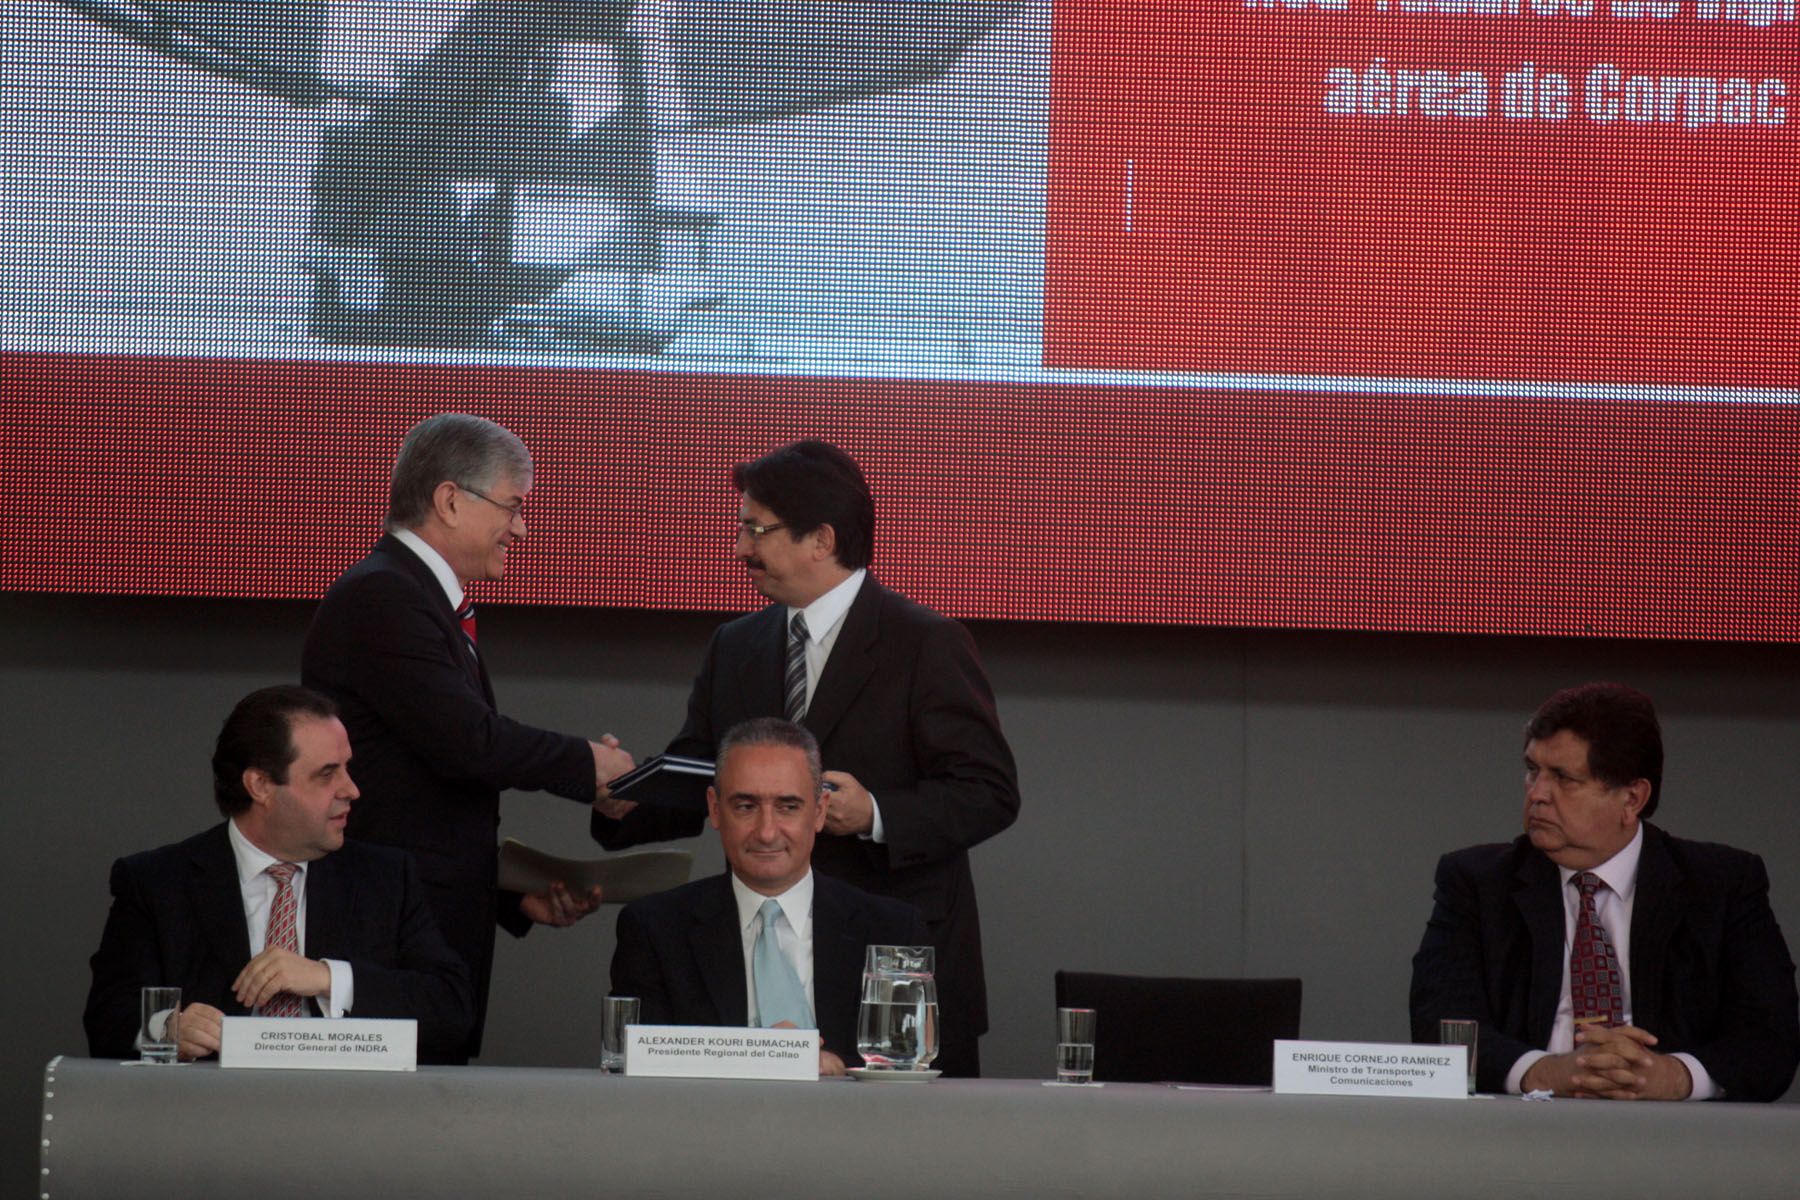 El Presidente Alan Garcia participa en ceremonia donde se oficializo adquisicion de radares para reforzar transito aereo nacional.

Foto: ANDINA/Juan Carlos Guzmán Negrini.